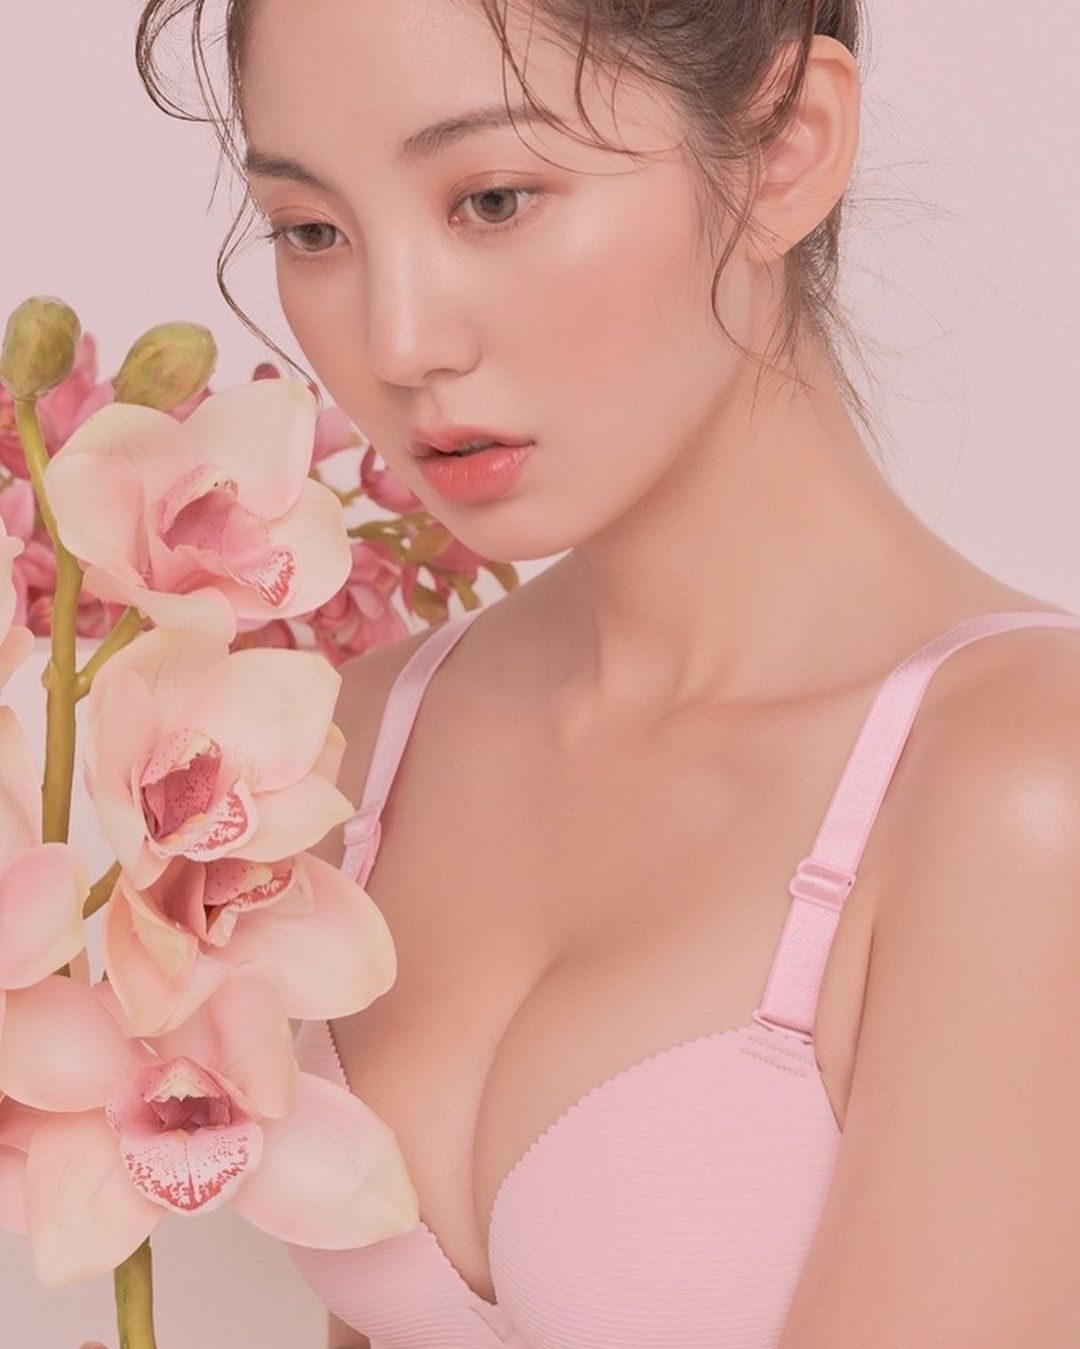 Rock Chae-eun – Beautiful Korean Push Up Bra Model